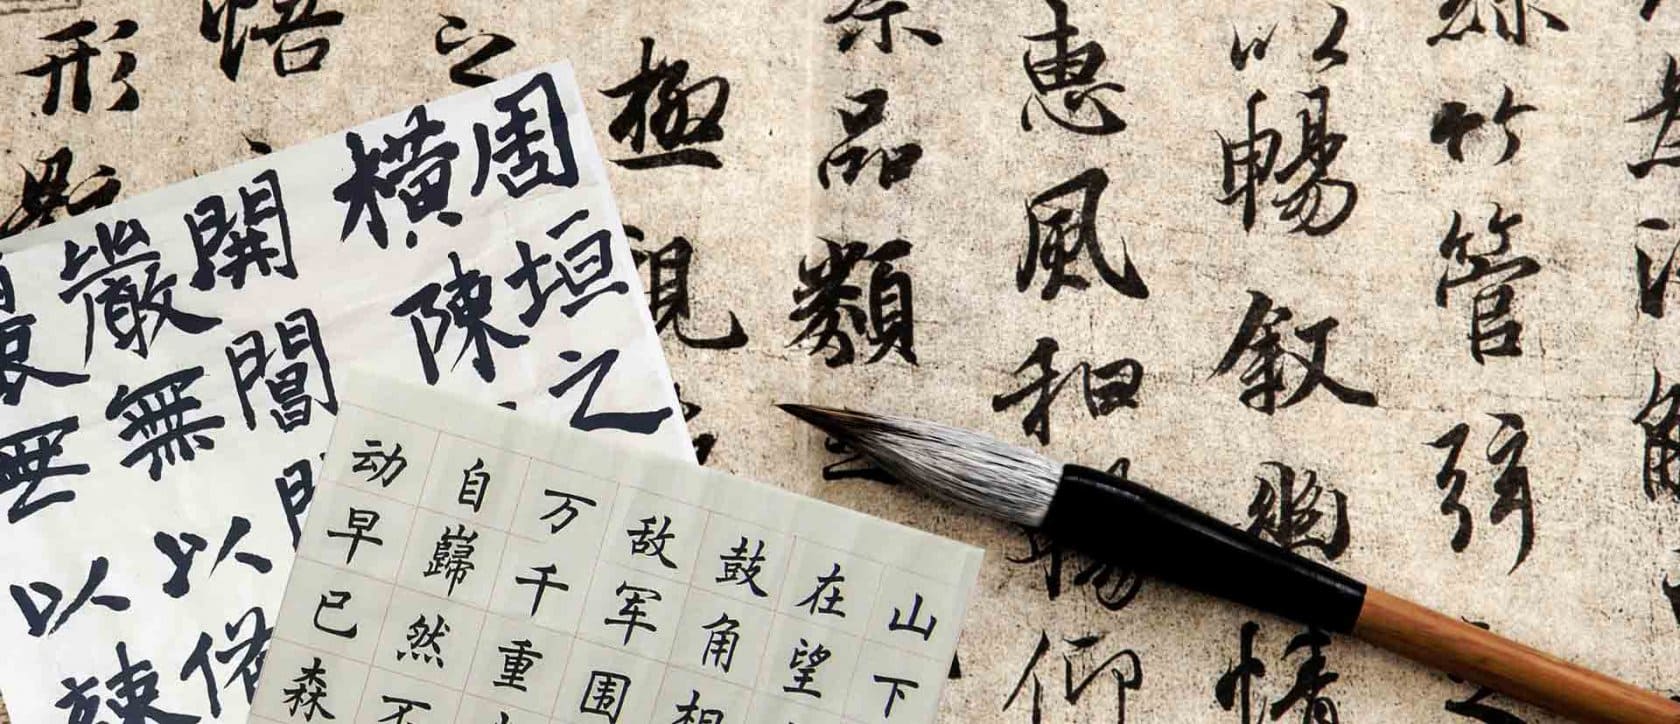 Как выучить китайский язык для успешного обучения в вузе